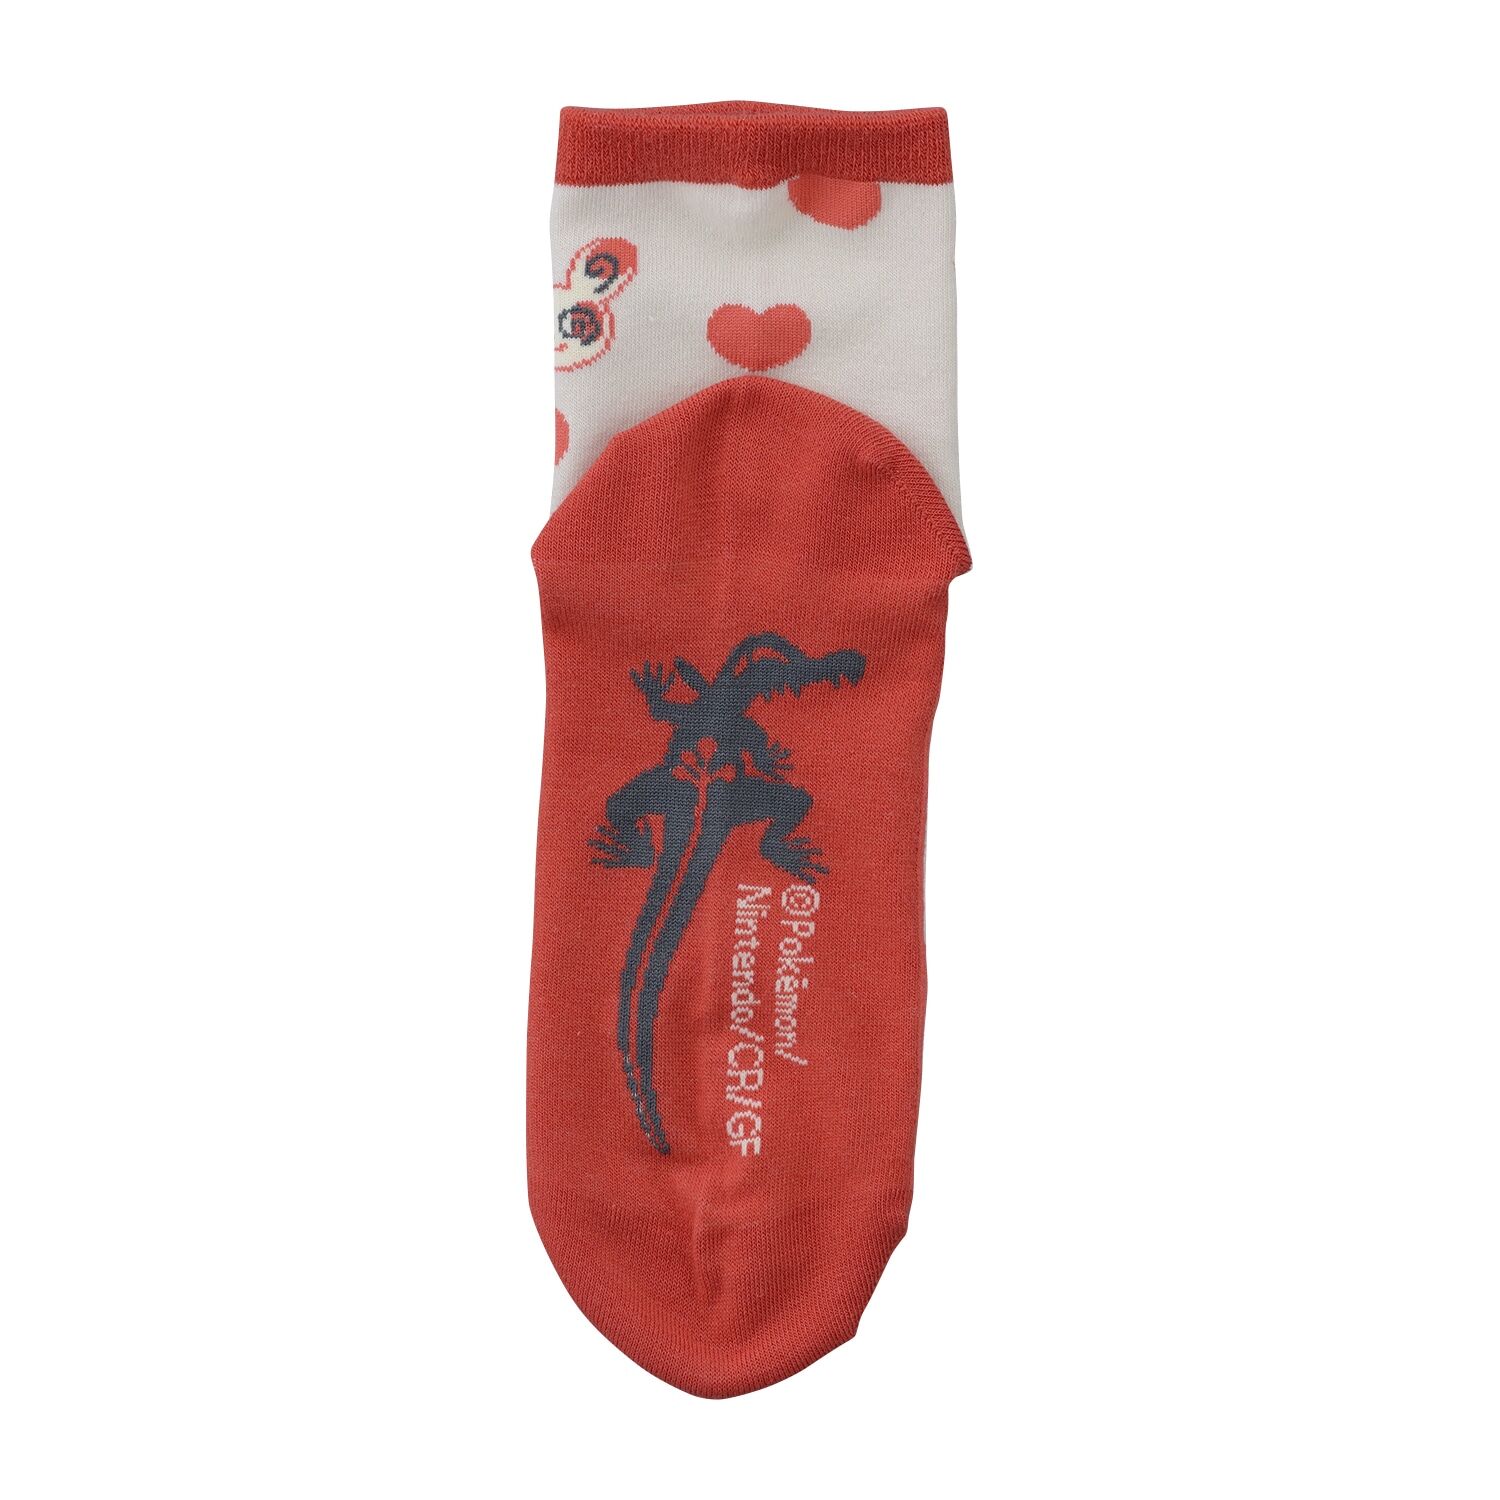 Spinda Pokémon-Socken (23-25cm)